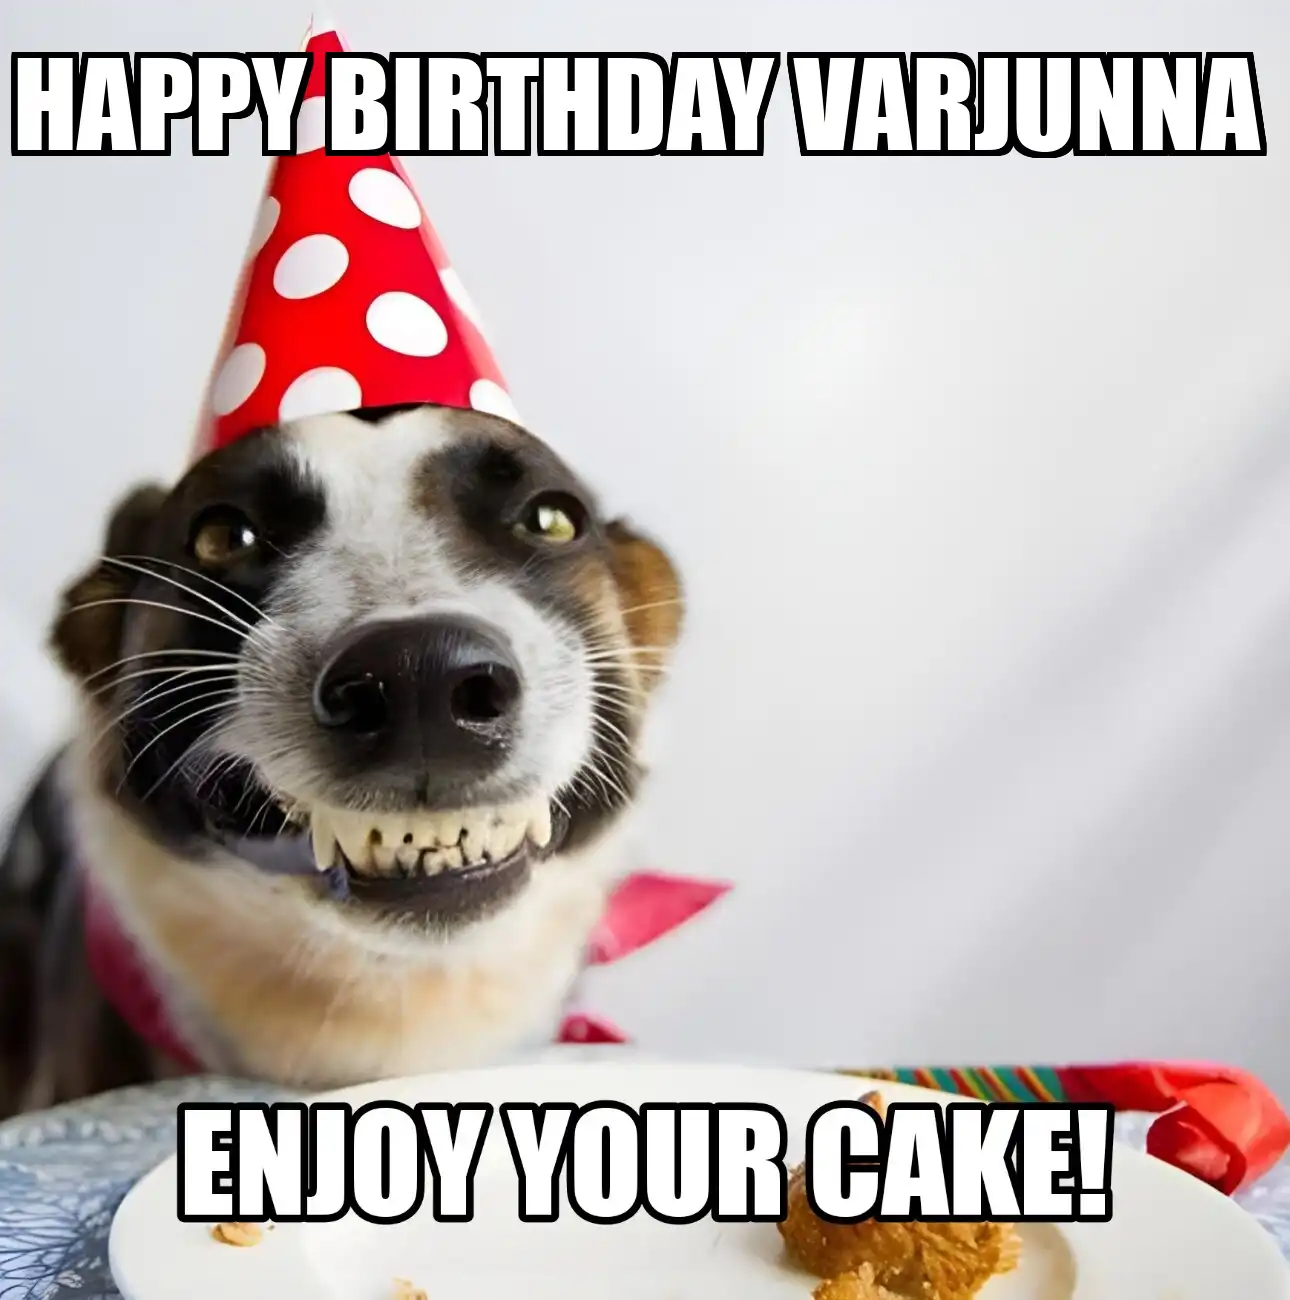 Happy Birthday Varjunna Enjoy Your Cake Dog Meme